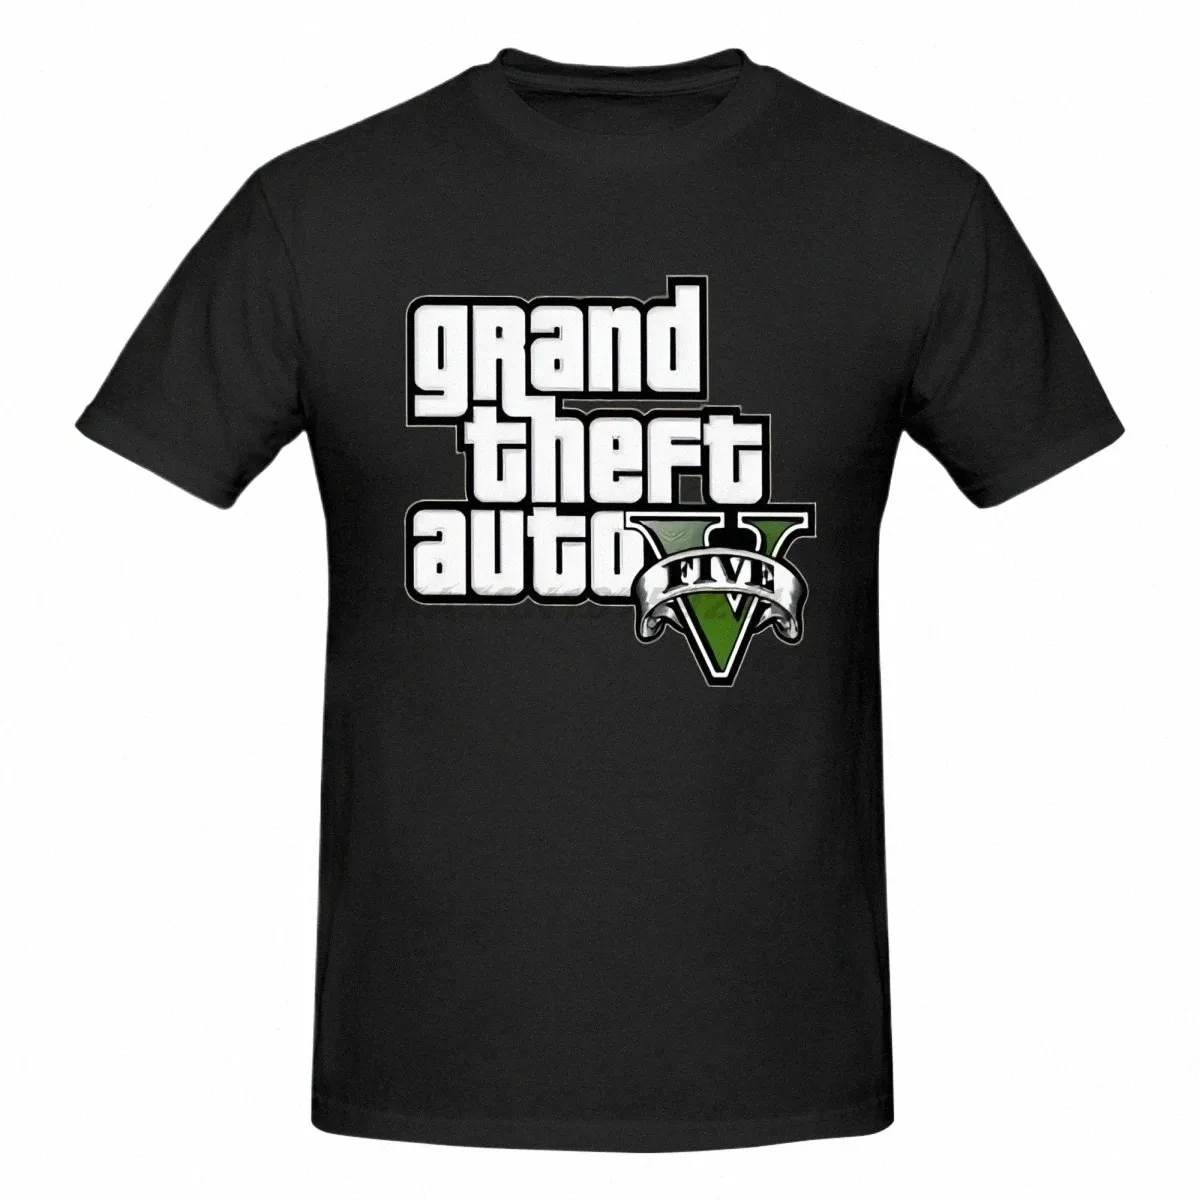 Grand Theft Auto GTA T Shirt Men Street LG med GTA 5 T-shirt Män berömda varumärken Tshirts i Cott Tees för par GTA5 F0L7#